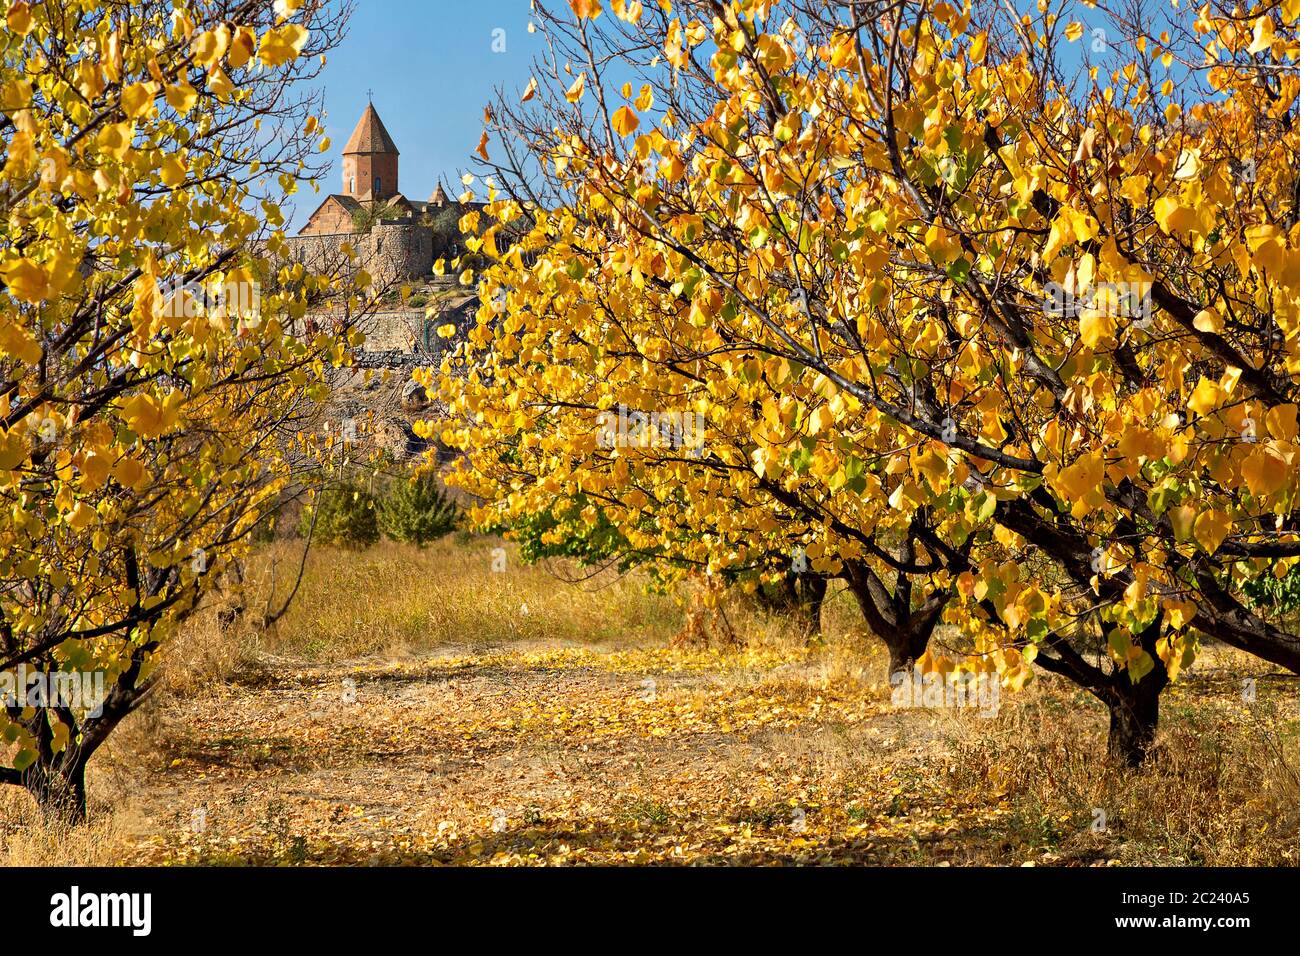 Khor Virap Kloster durch Blätter mit Herbstfarben, Armenien Stockfoto